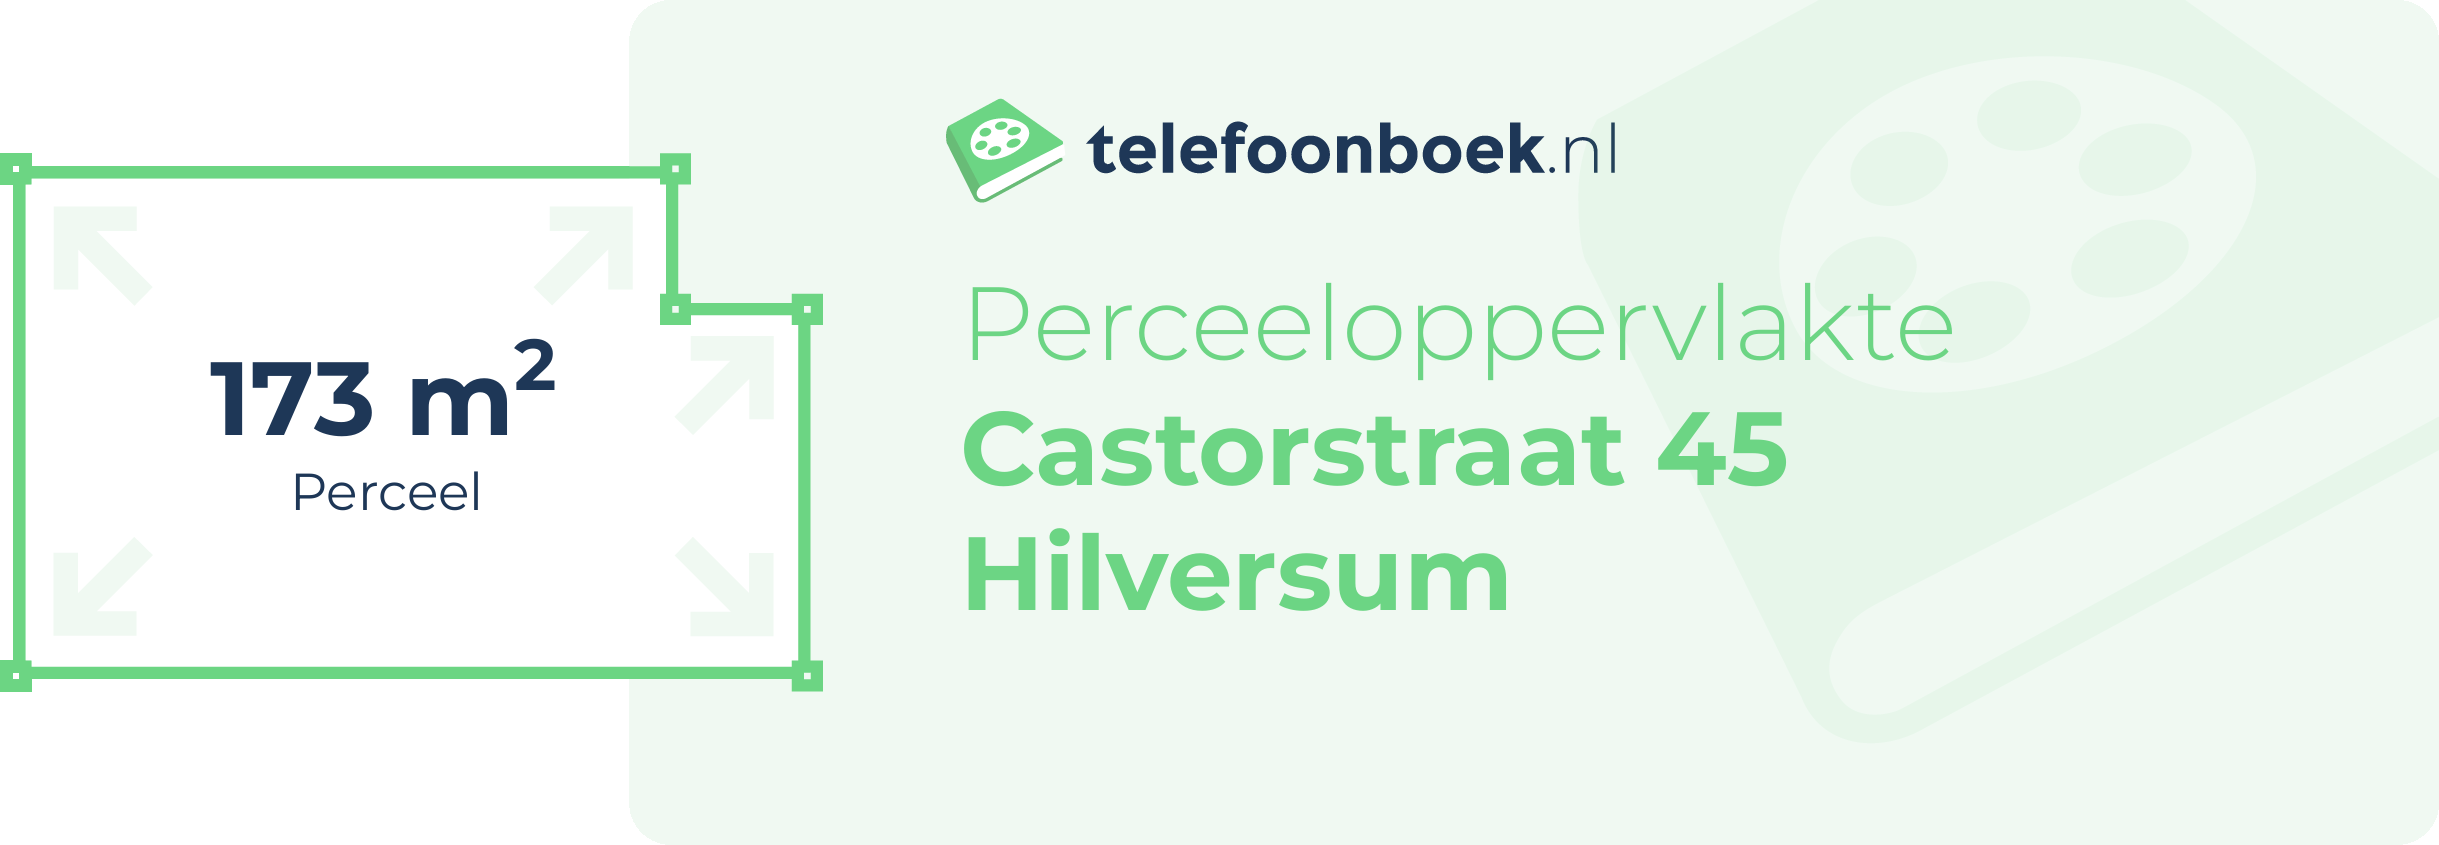 Perceeloppervlakte Castorstraat 45 Hilversum